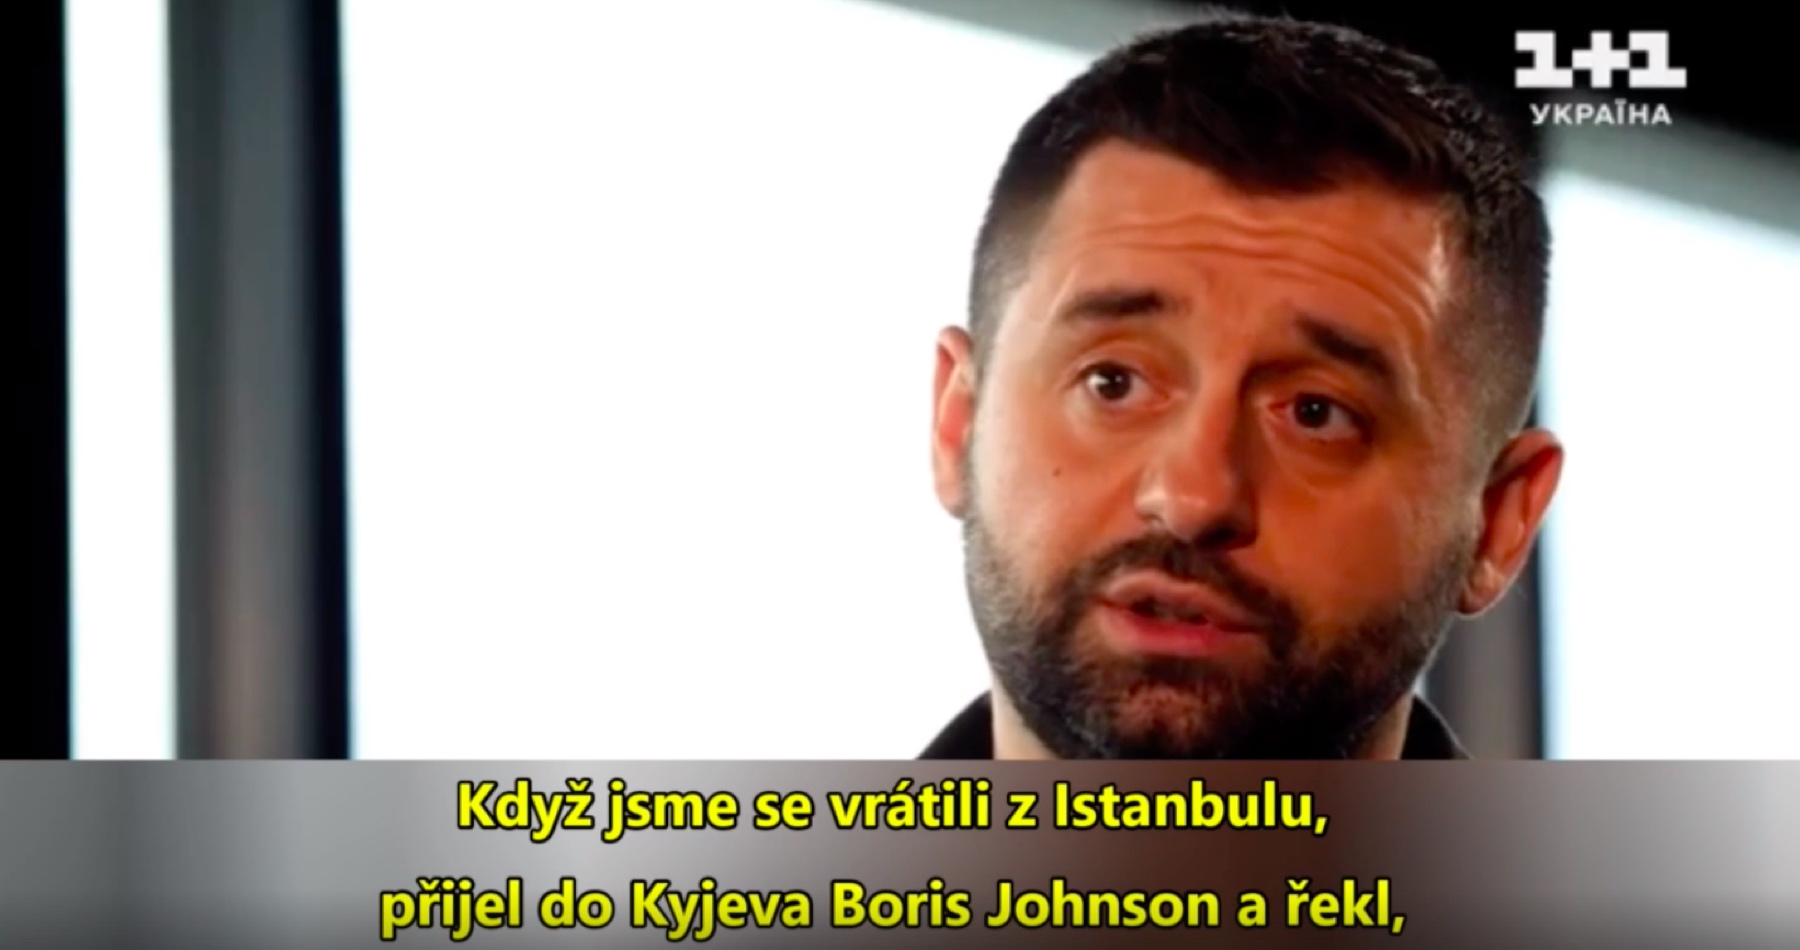 Vedoucí ukrajinské delegace z Istanbulu a předseda parlamentního klubu Zelenského strany odpálil na ukrajinské televizi pravdu, že válka na Ukrajině mohla skončit v březnu 2022, ale tehdejší britský premiér Boris Johnson to zamítl!